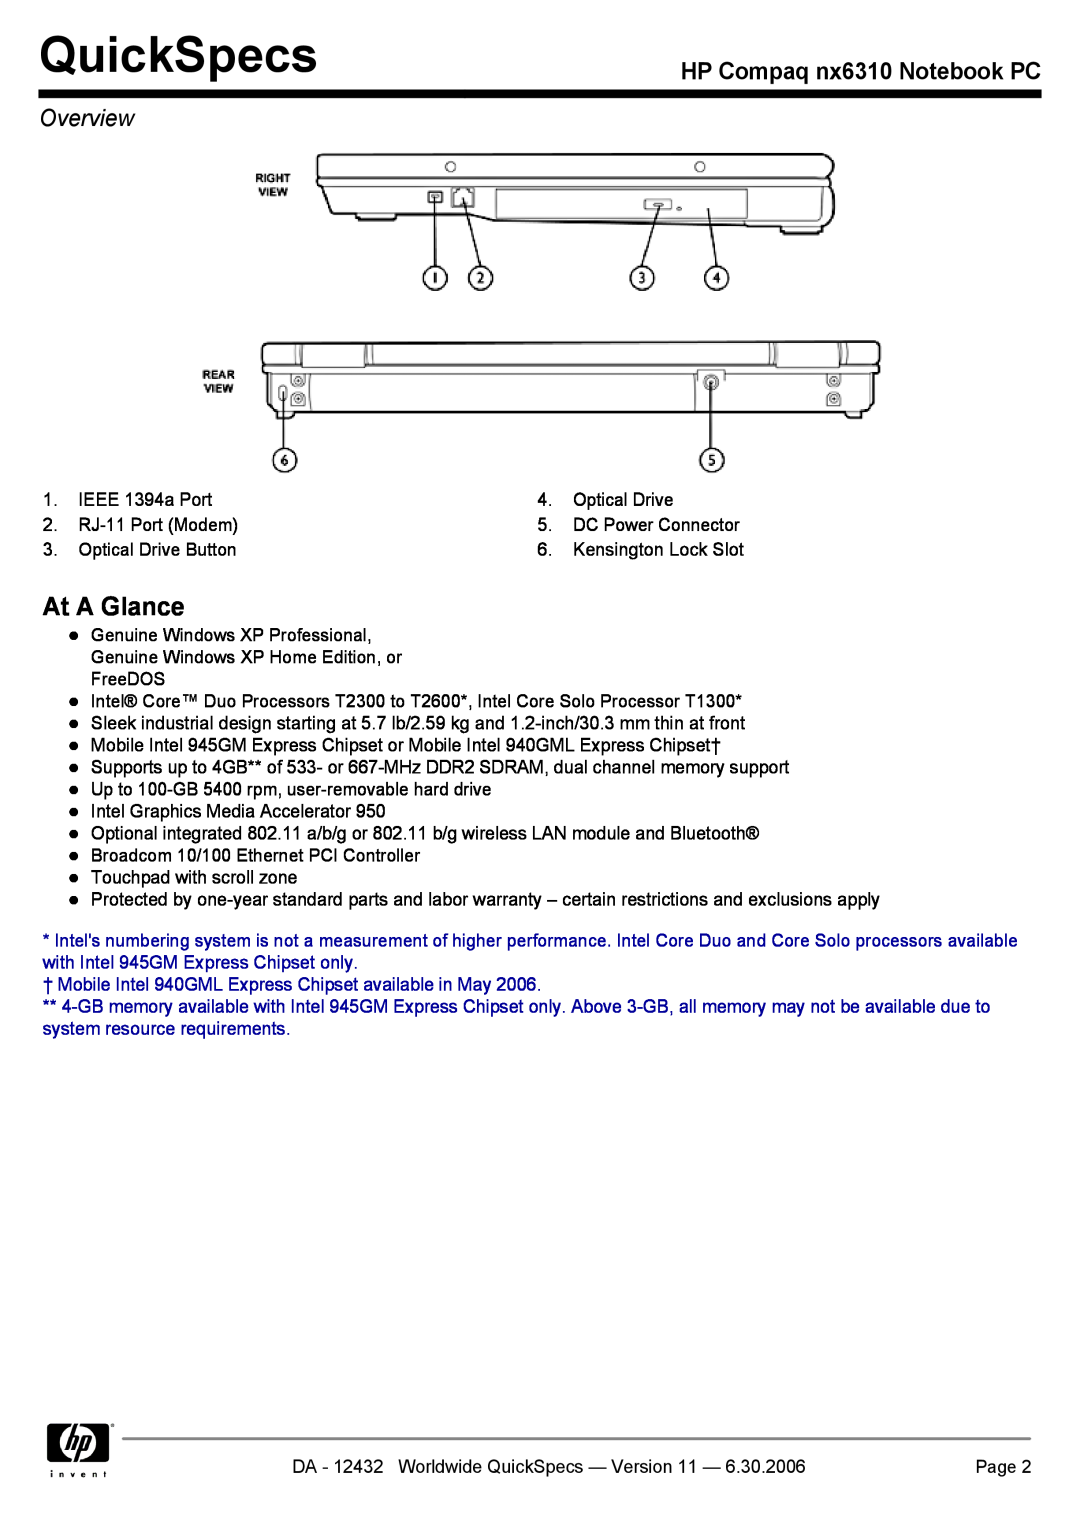 Compaq NX6310 manual At A Glance, QuickSpecs, HP Compaq nx6310 Notebook PC, Overview 